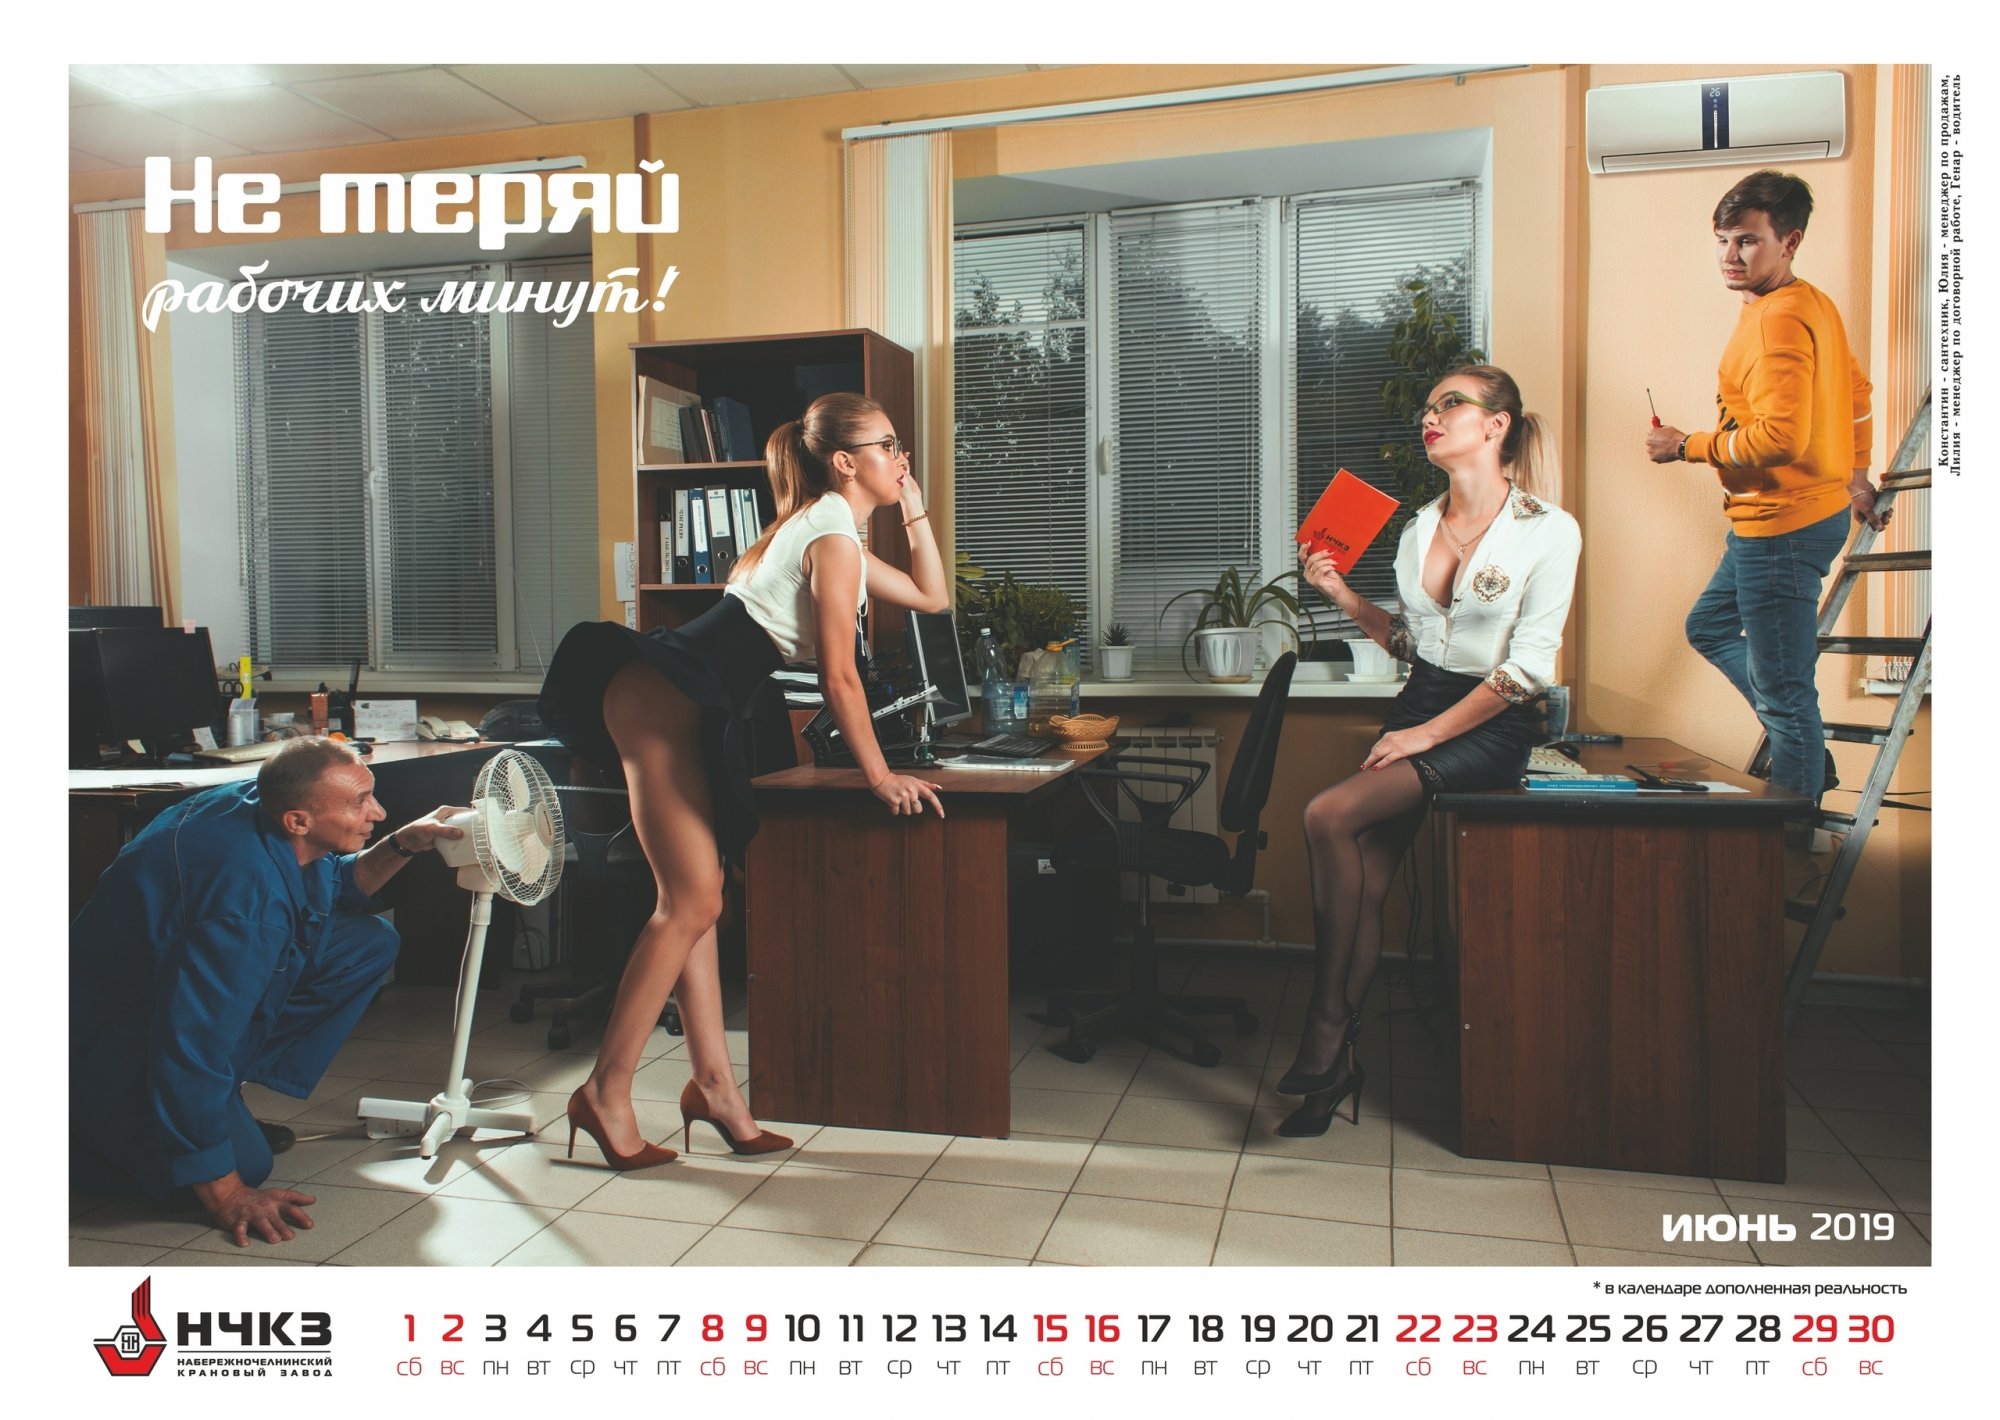 Крановый завод опубликовал новые фото эротического календаря